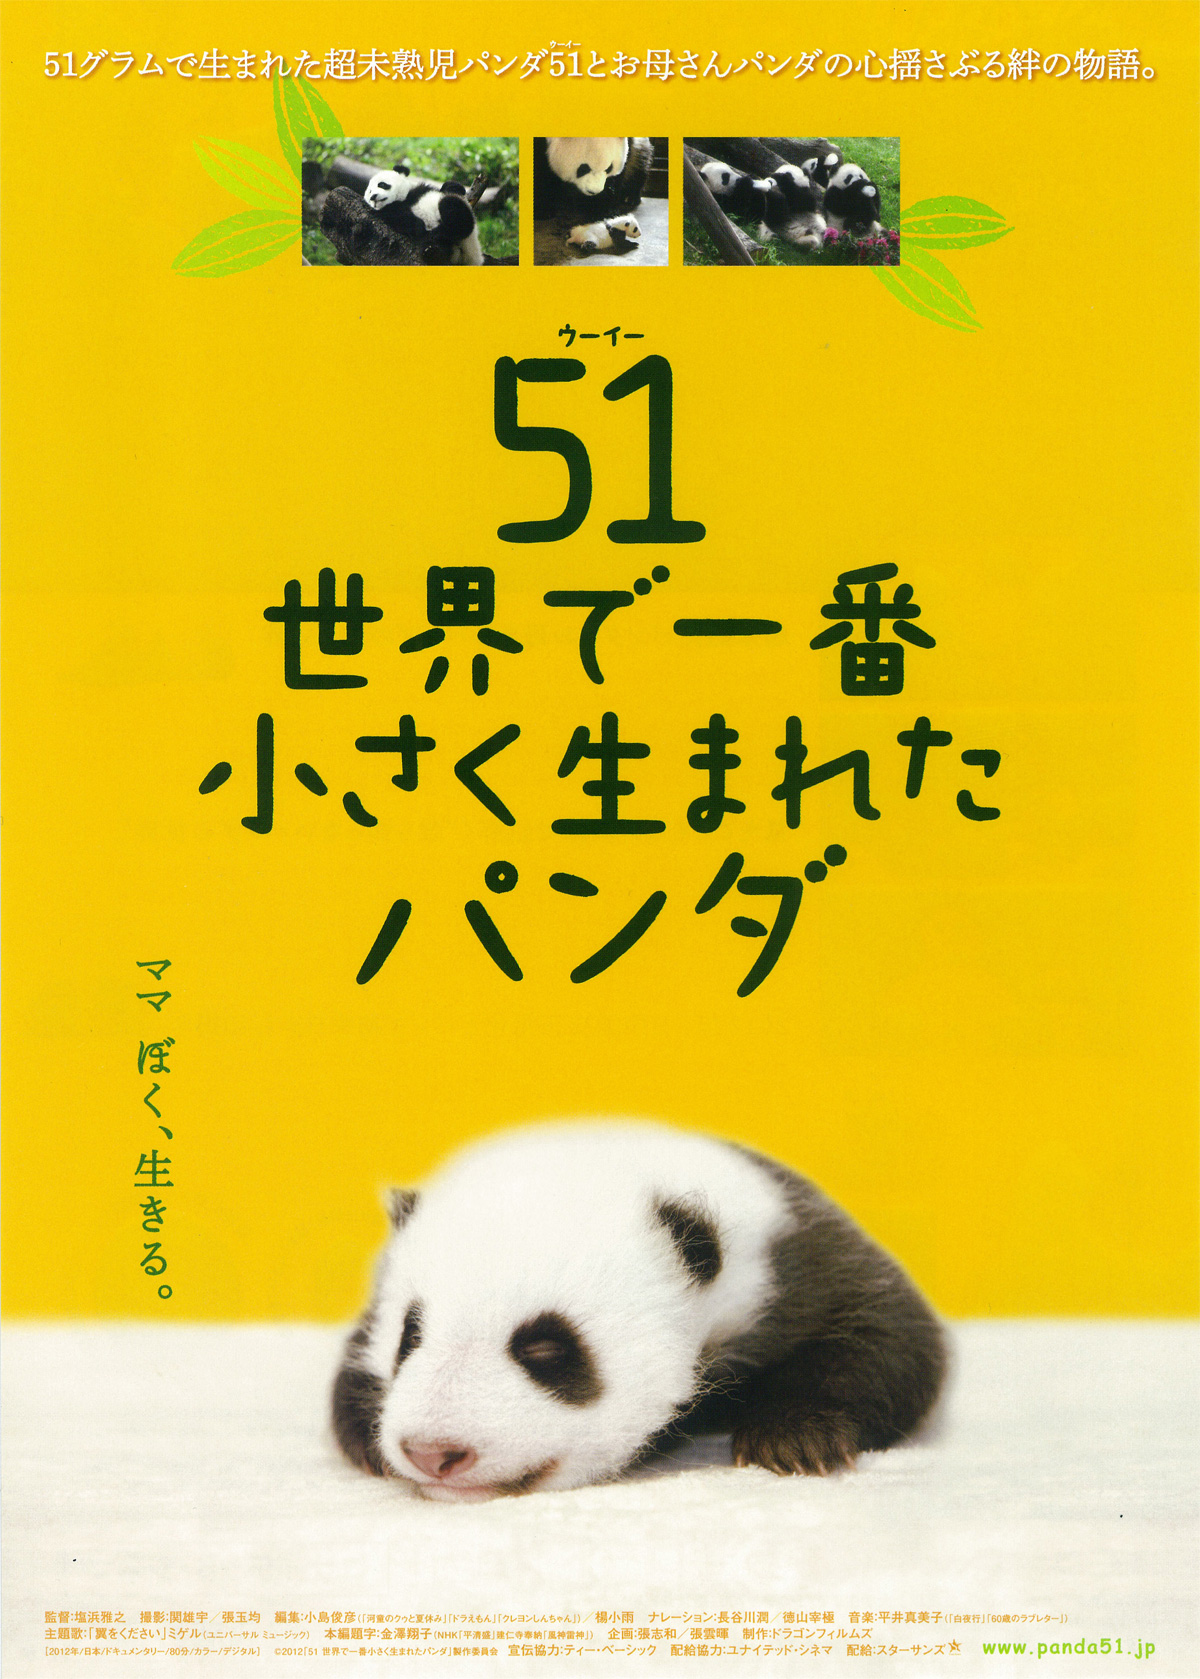 51（ウーイー）　世界で一番小さく生まれたパンダの画像